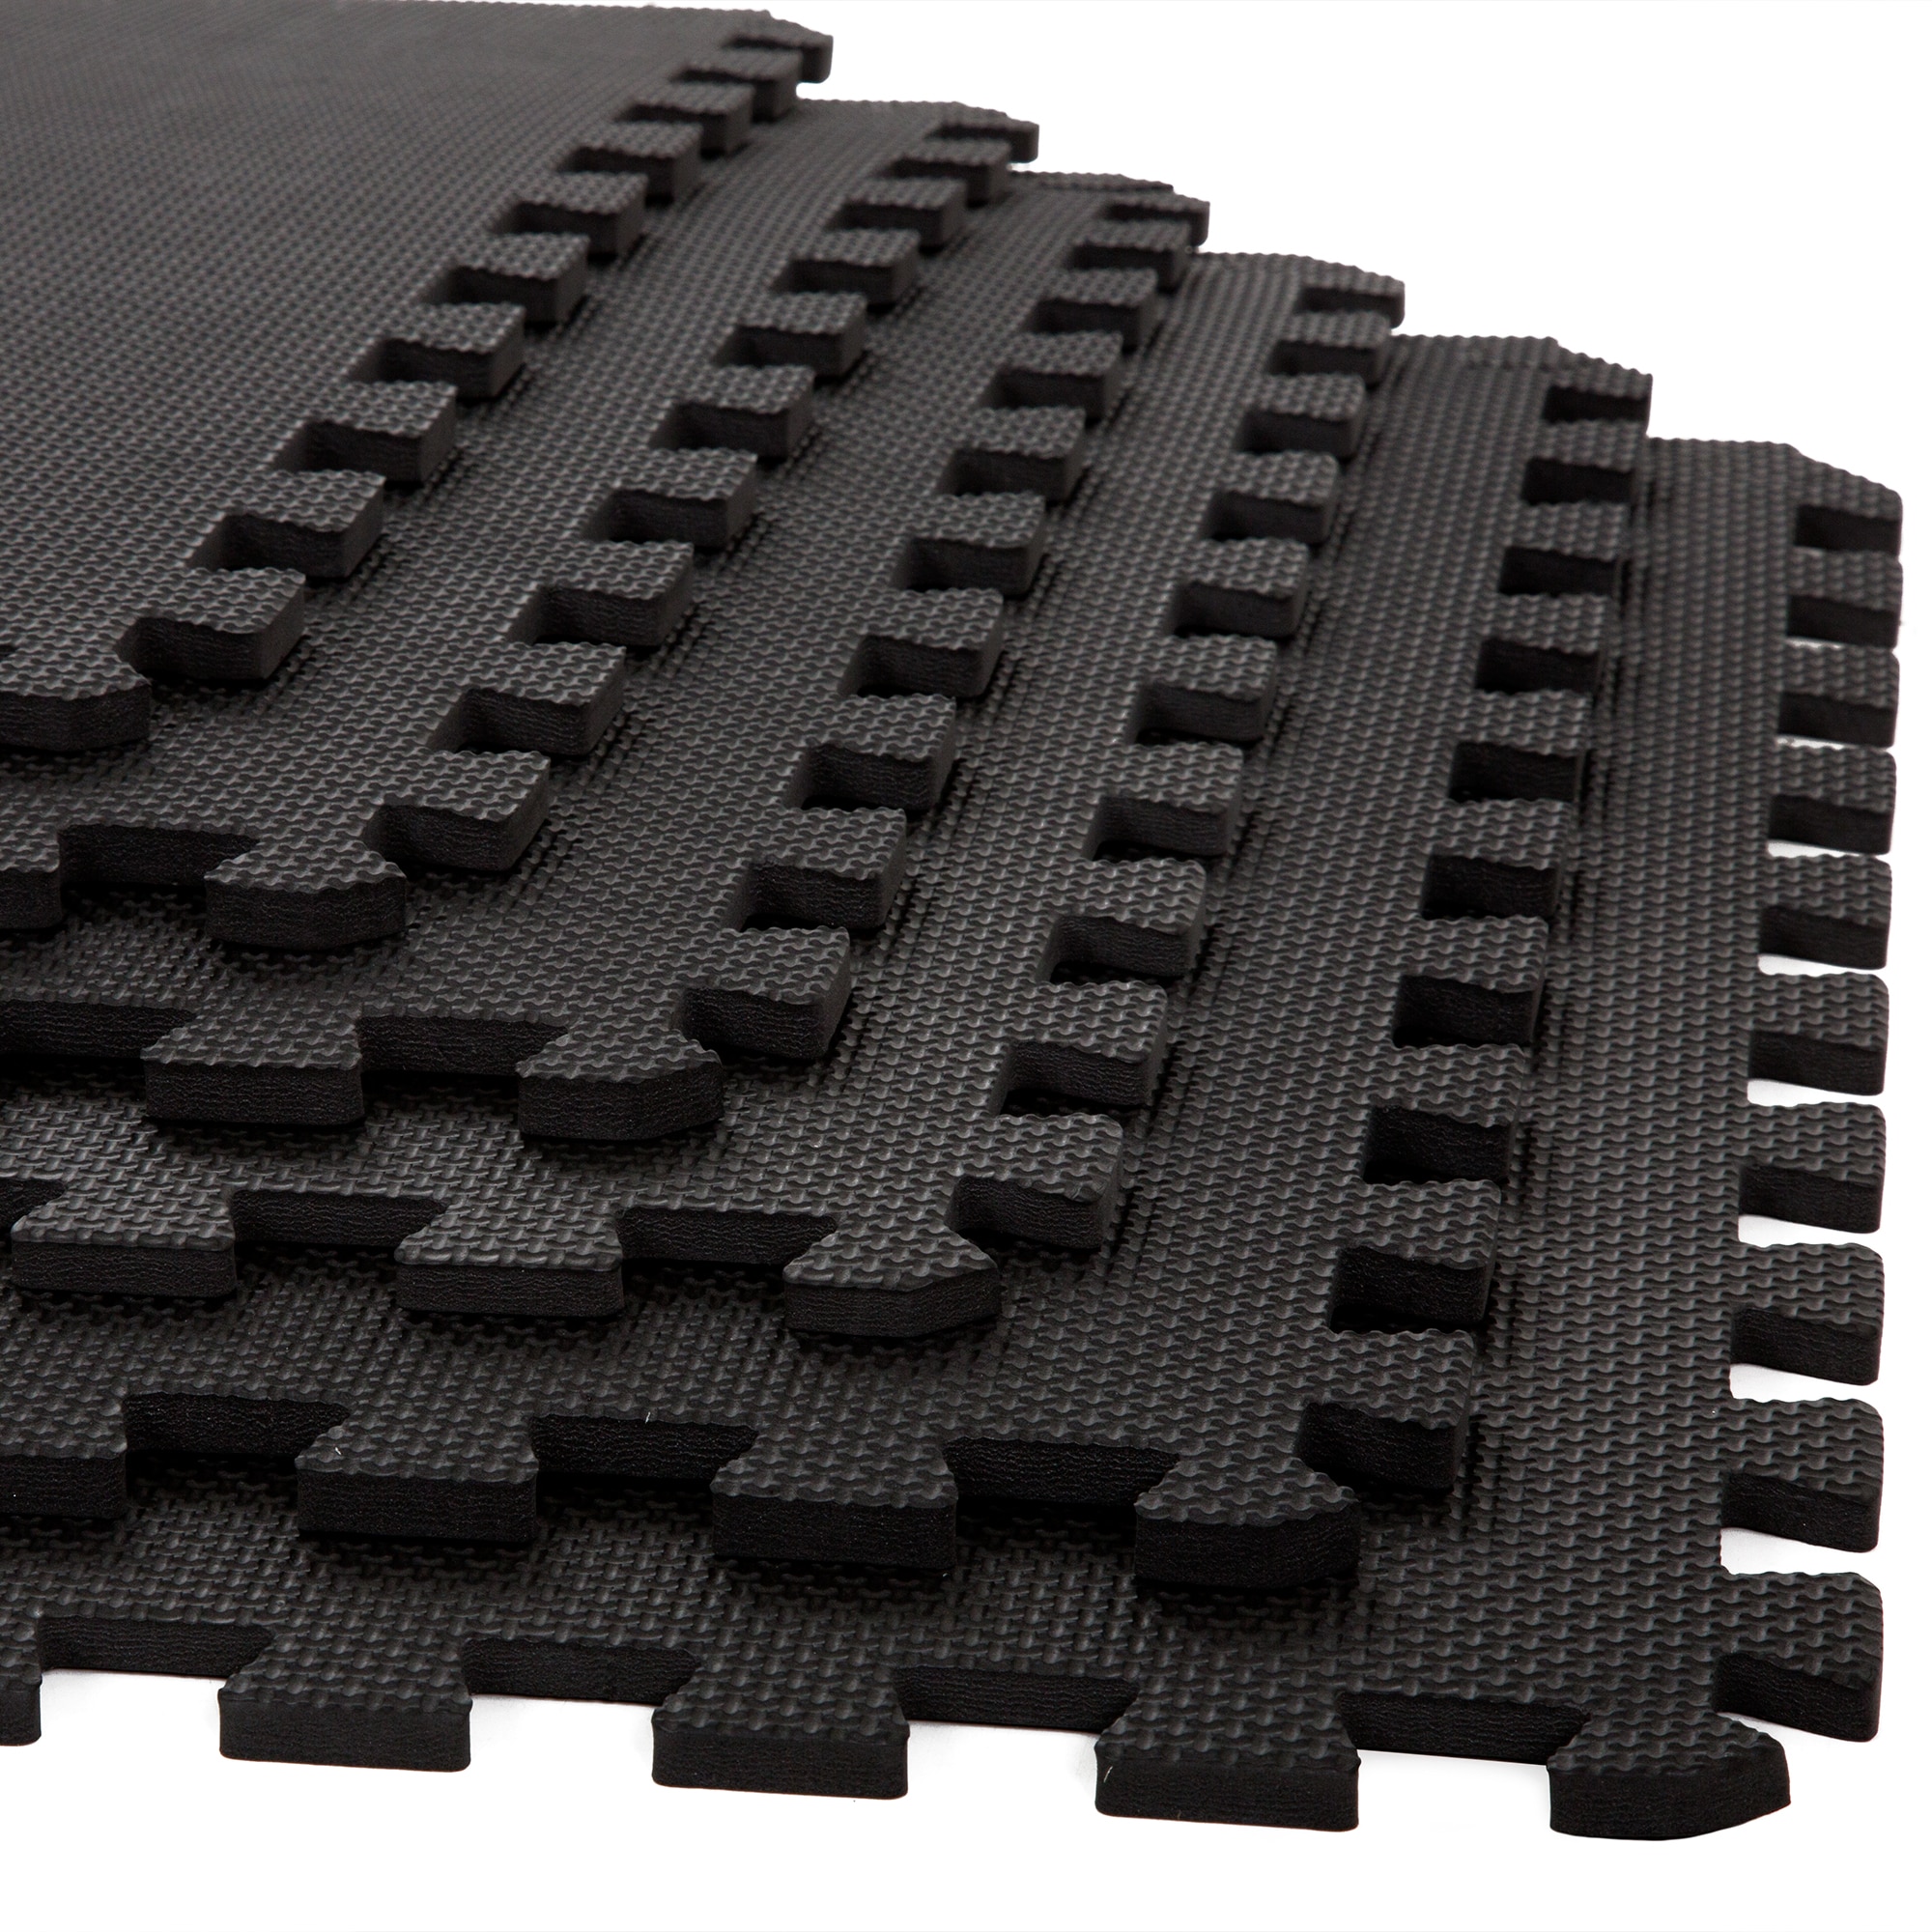 24 sqft white interlocking foam floor puzzle tiles mats puzzle mat flooring 